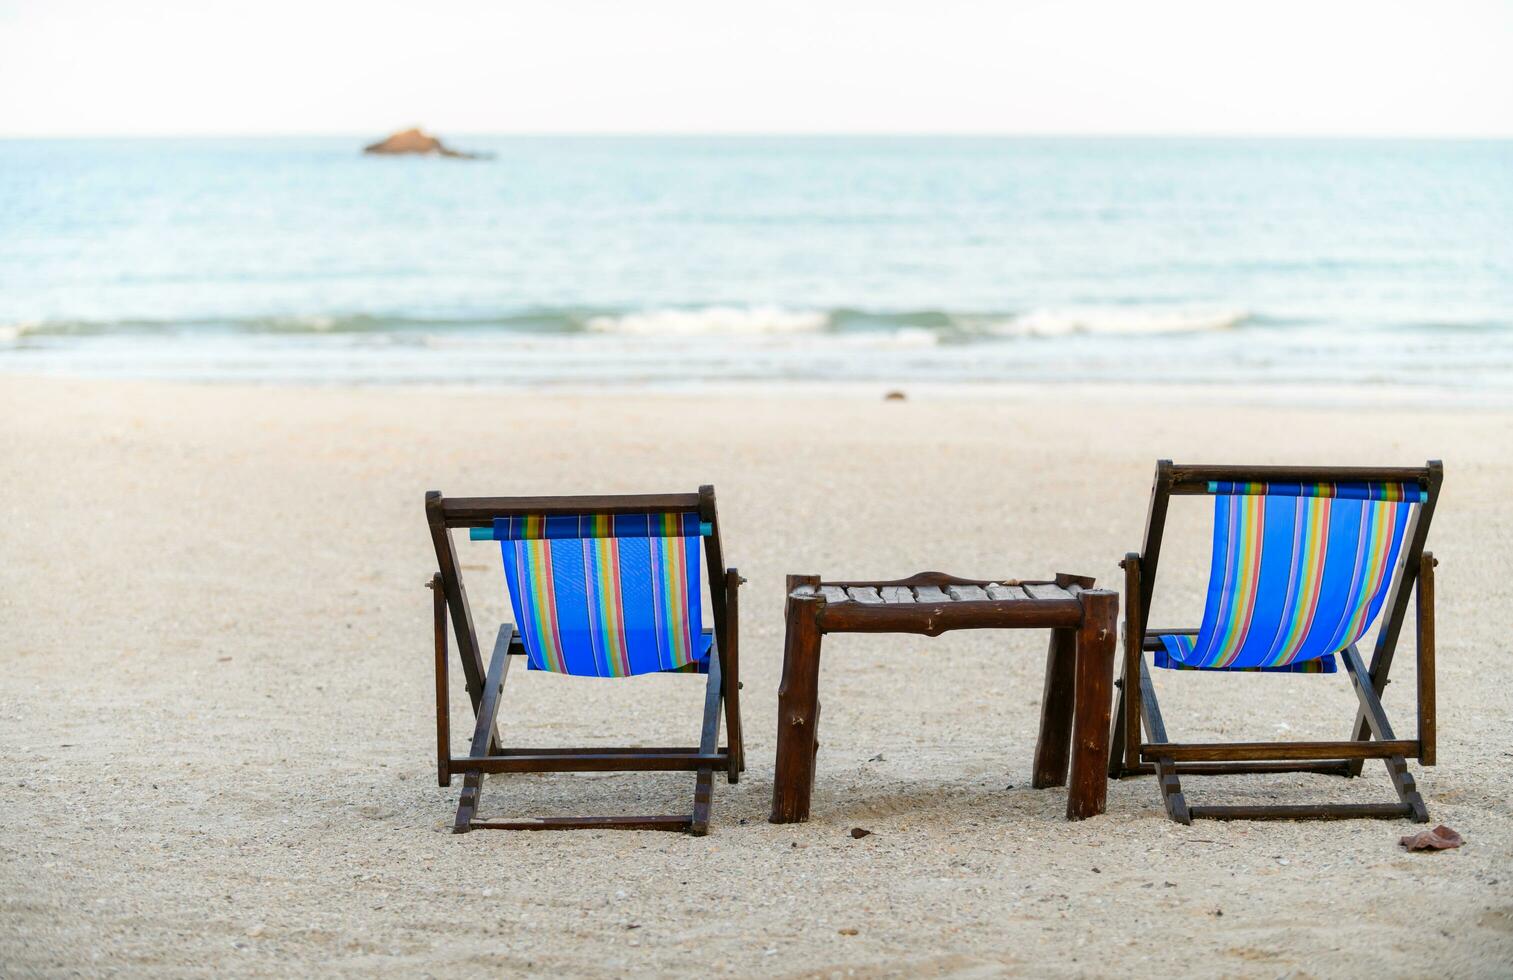 Two deck chair on the beach near sea, photo